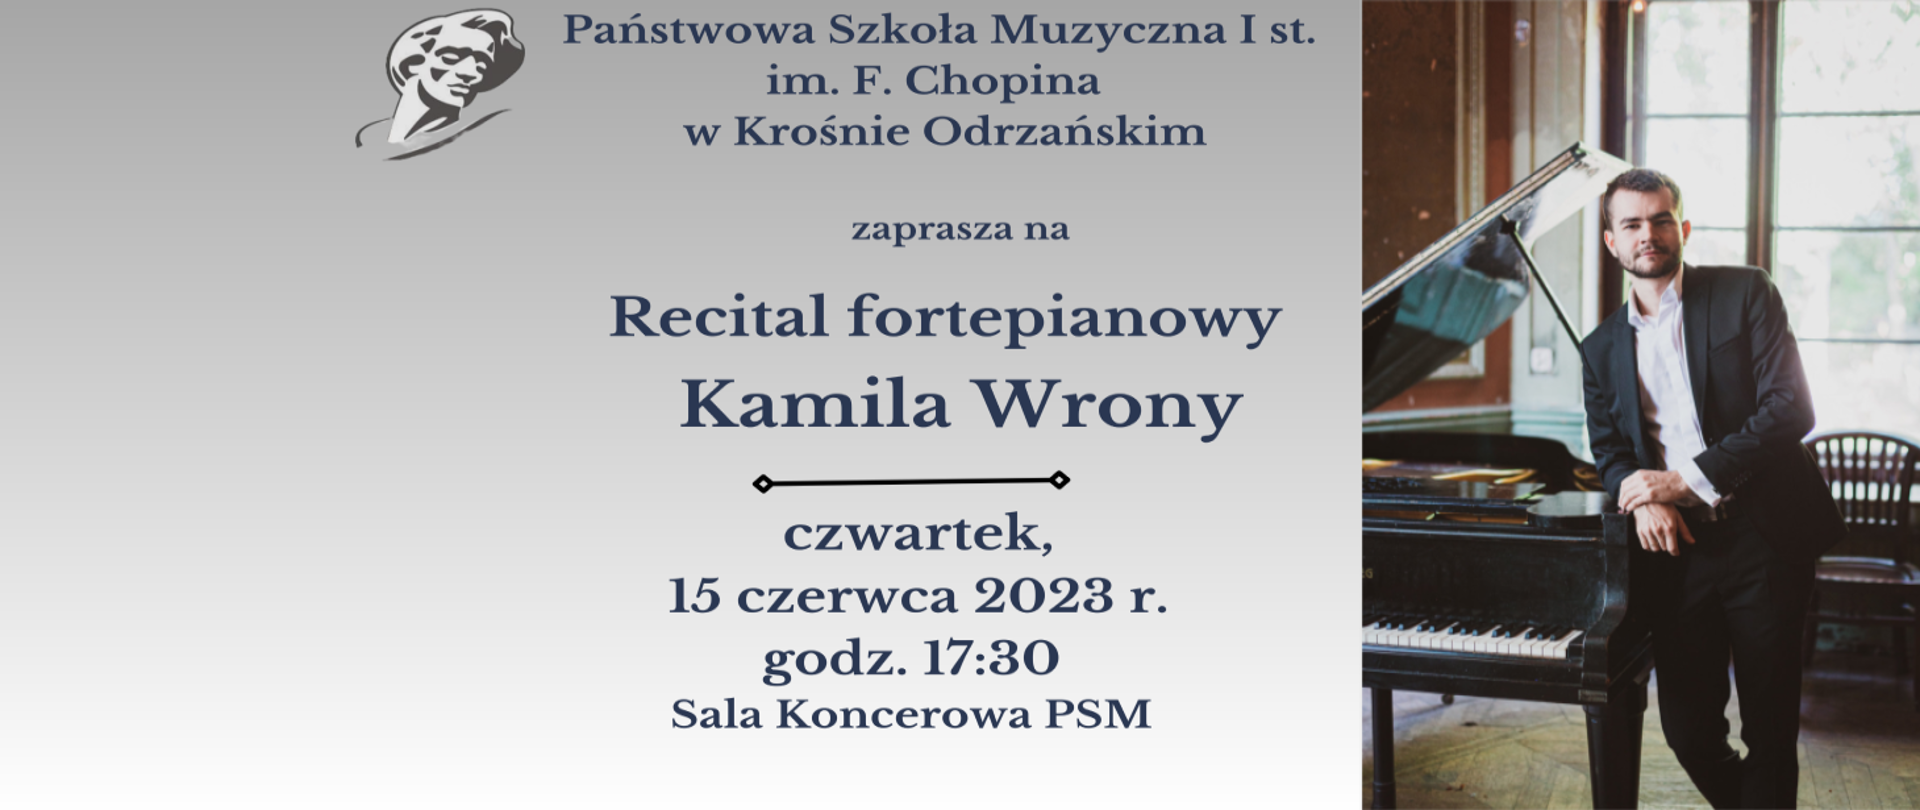 Szary baner, ozdobiony zdjęciem pianisty - Pana Kamila Wrony, zapowiada recital fortepianowy, który odbędzie się 15.06.2023 r. o godzinie 17:30 w Sali Koncertowej PSM w Krośnie Odrzańskim. 